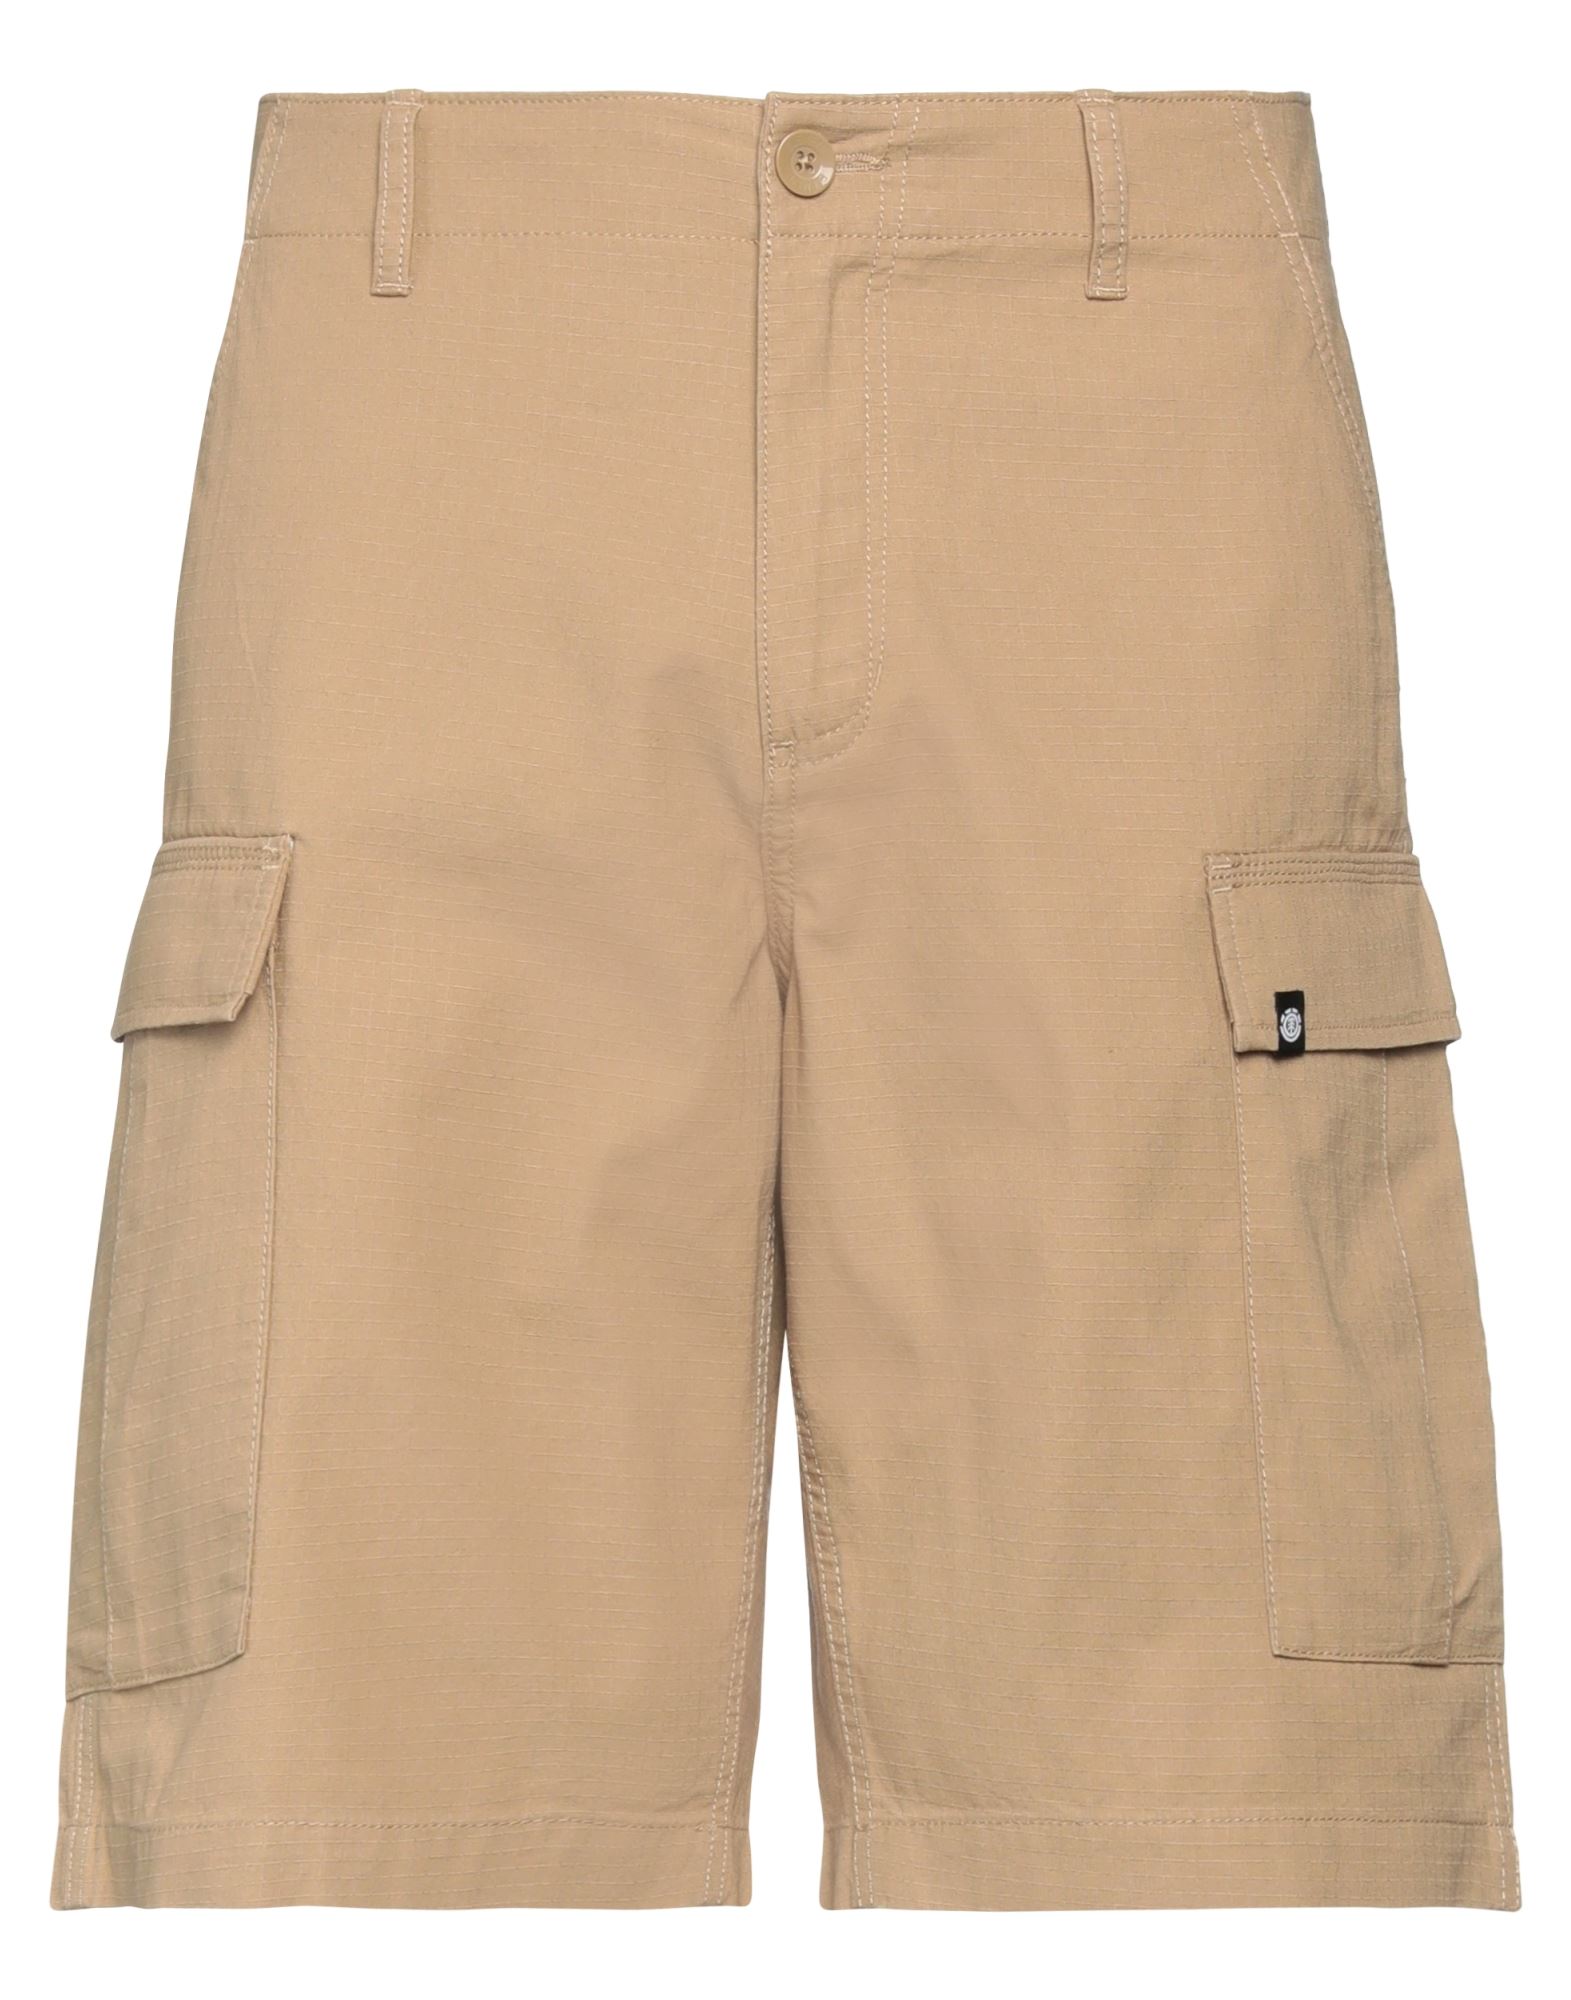 Element Man Shorts & Bermuda Shorts Sand Size 28 Cotton In Beige